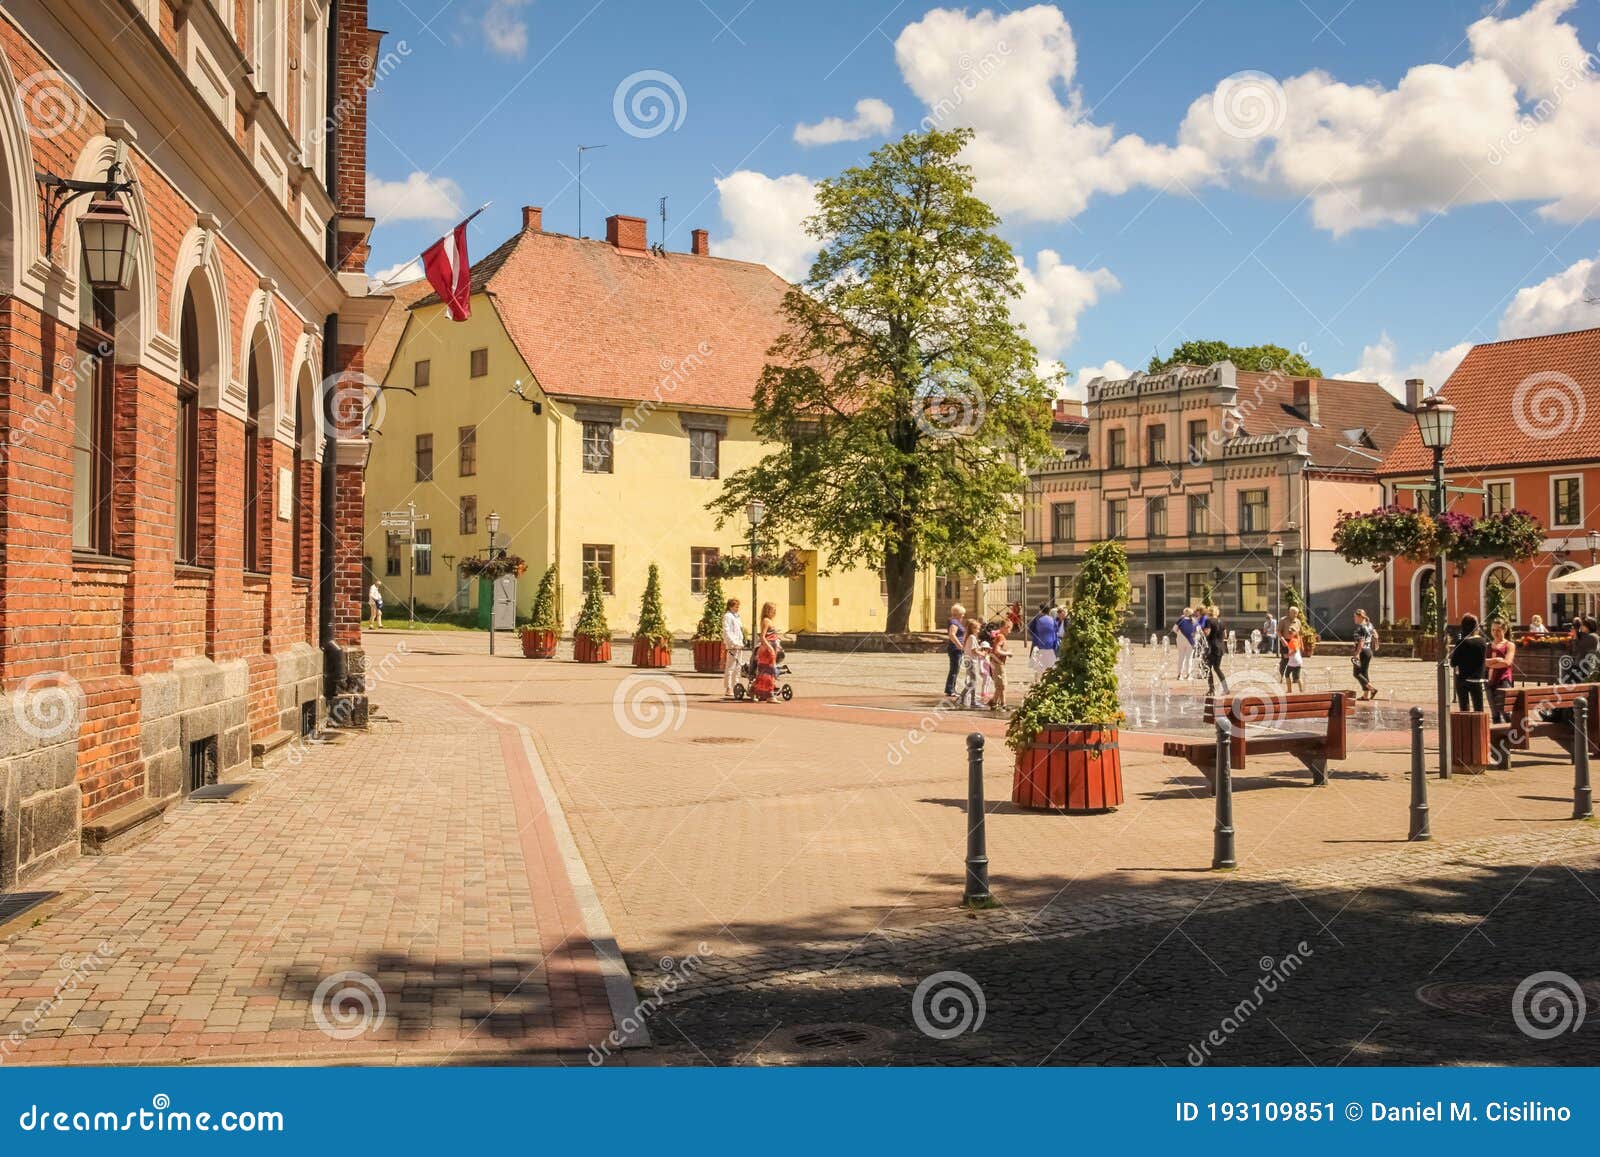 Foto de Moinho De Vento Na Medieval Cesis Região Da Letônia e mais